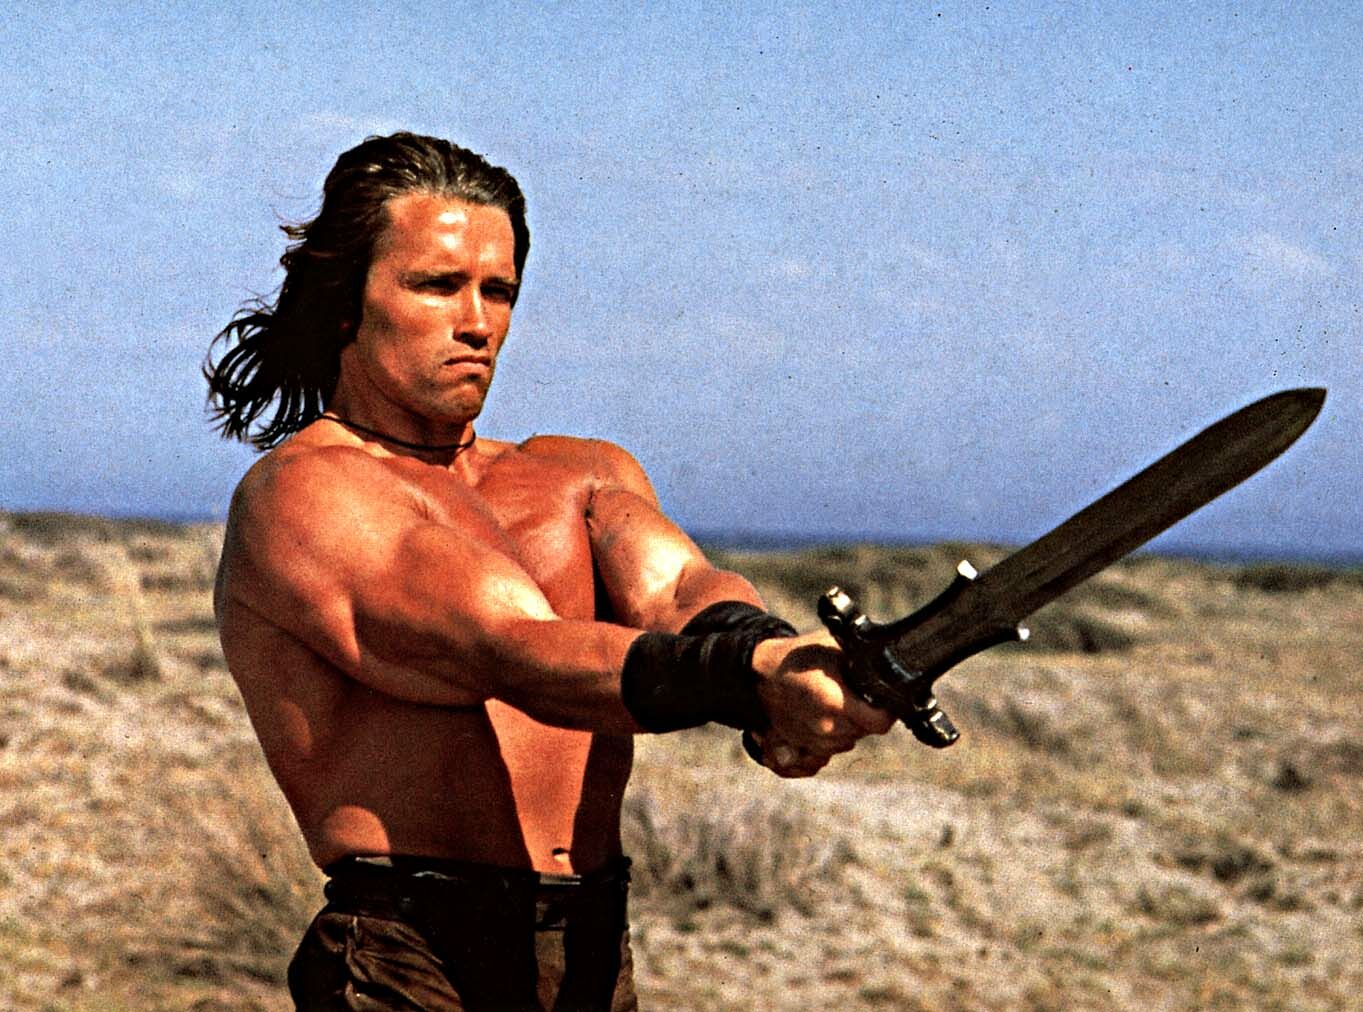 Conan the Barbarian **** (1982, Arnold Schwarzenegger, James Earl Jones